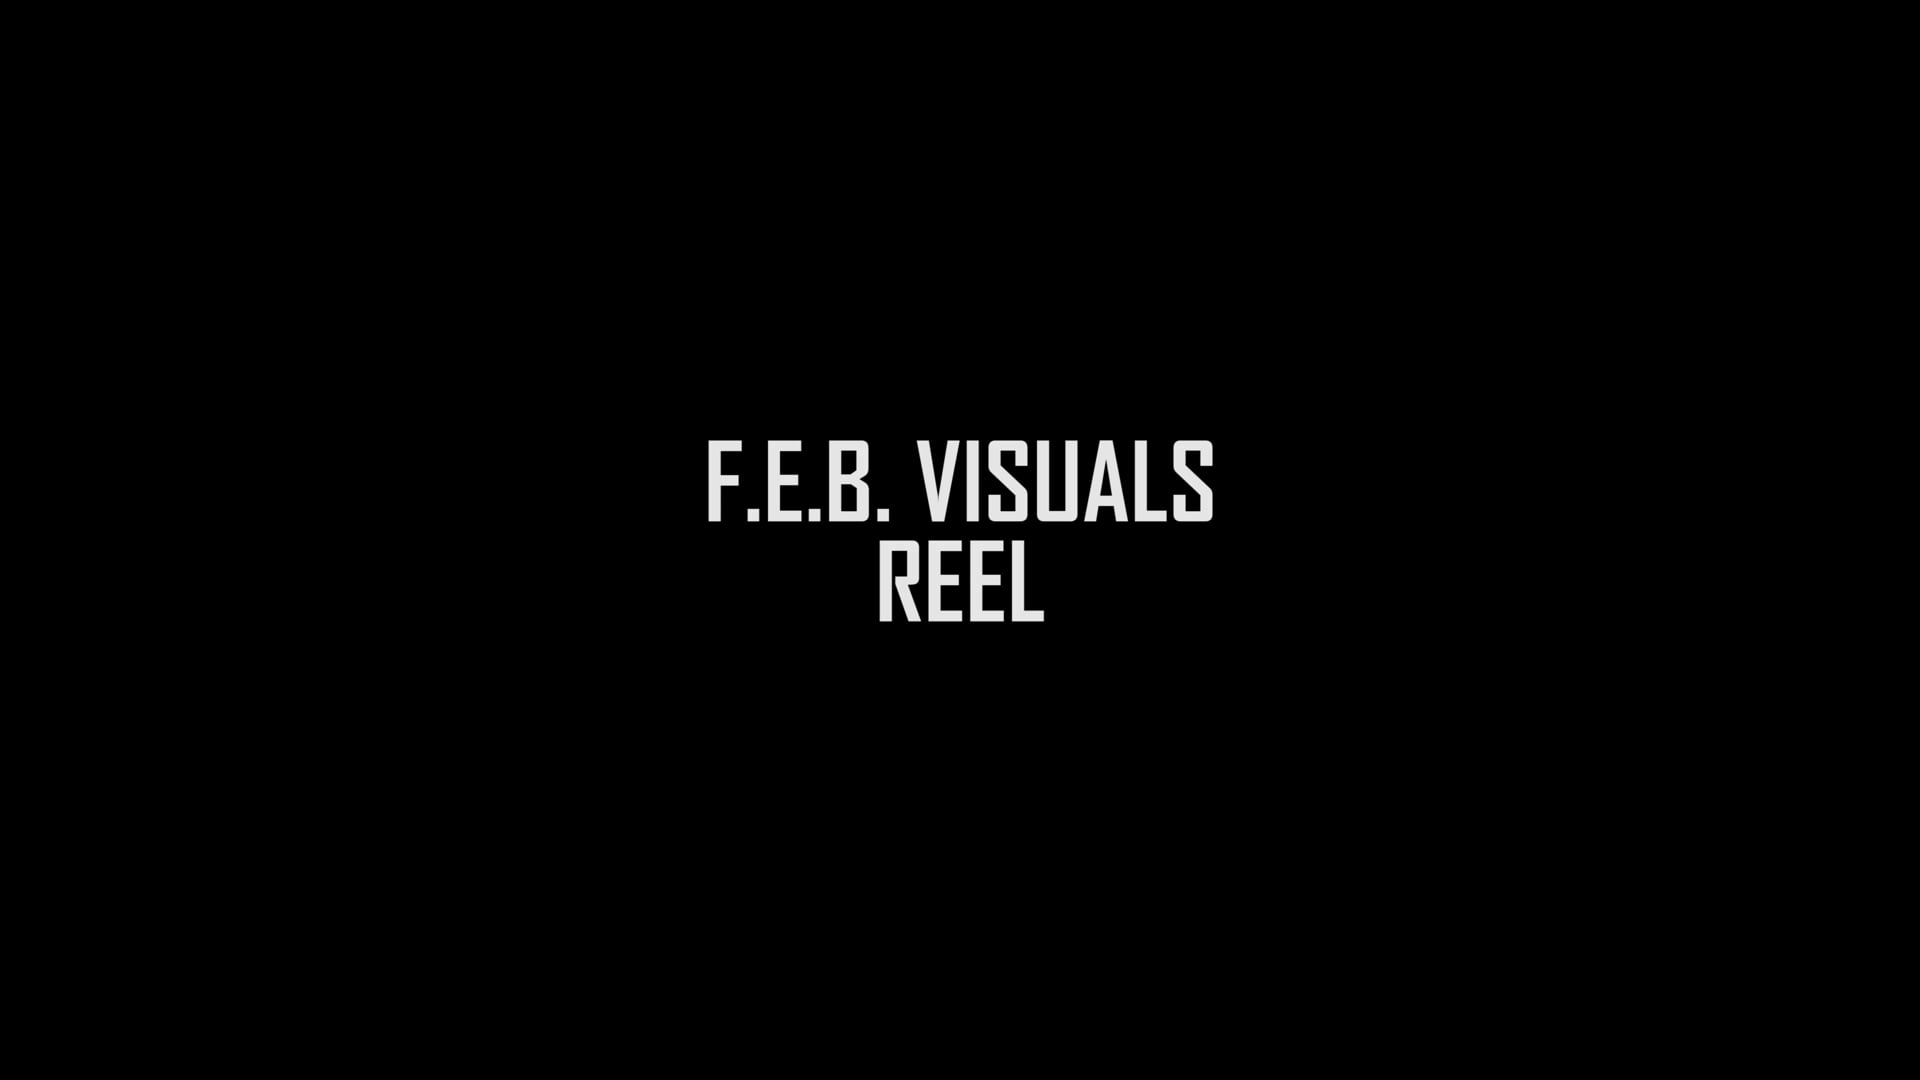 F.E.B. VISUALS REEL 2019